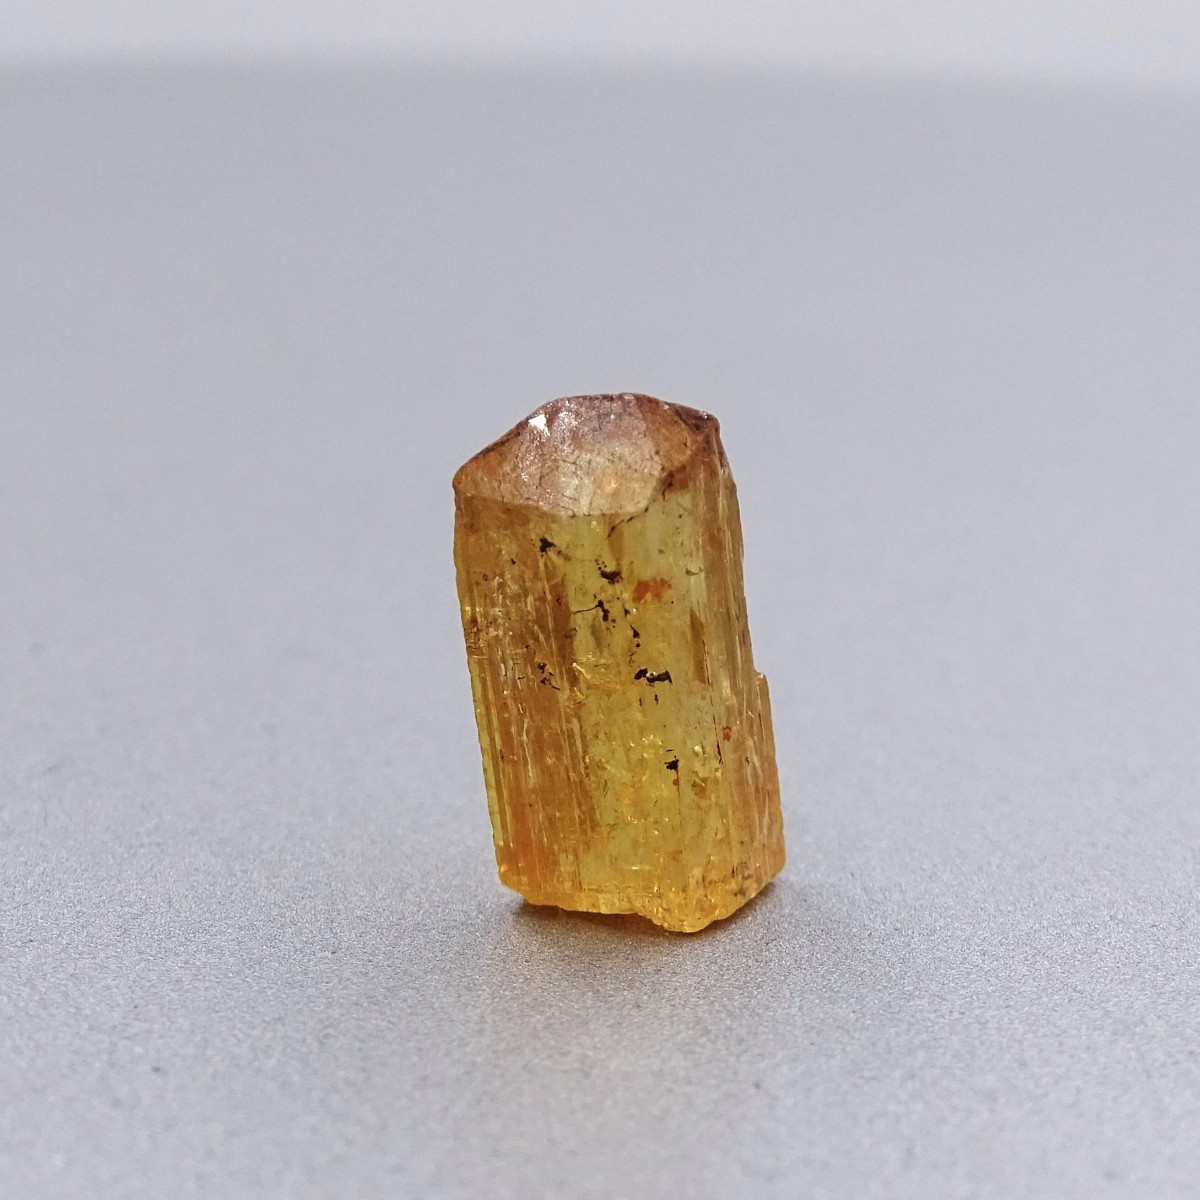 Topaz imperial přírodní krystal 2,1g, Brazílie